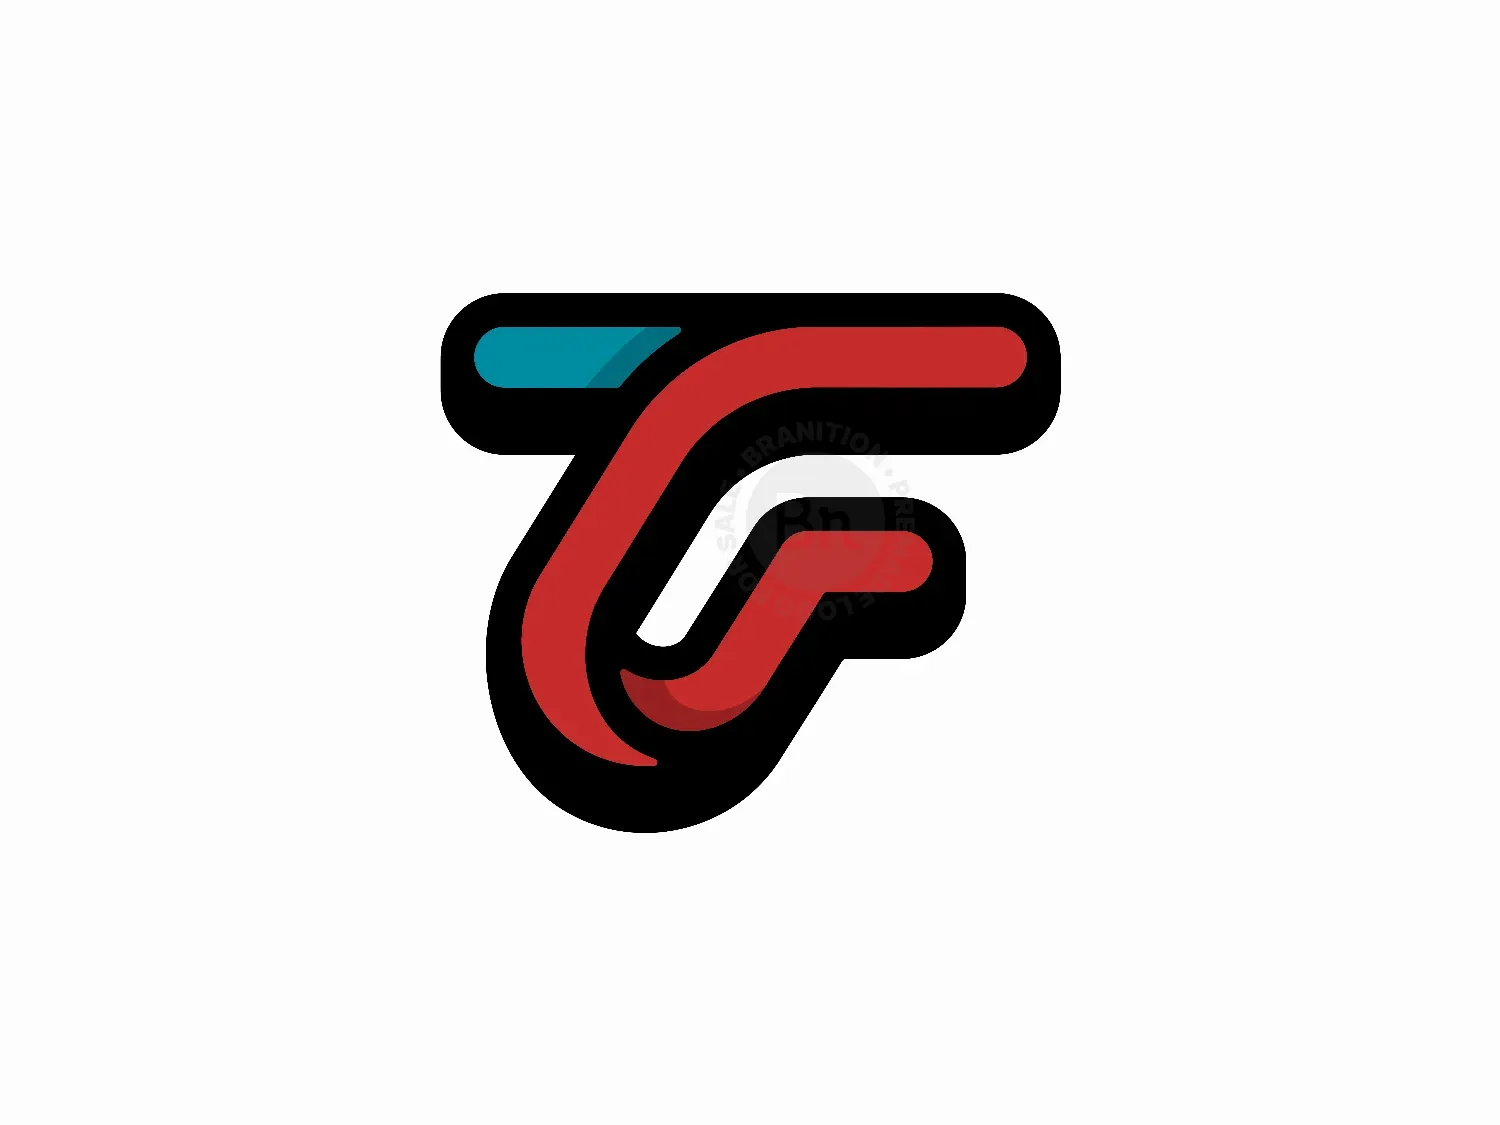 FT F T letter logo design. Initial letter FT... - Stock Illustration  [105741893] - PIXTA